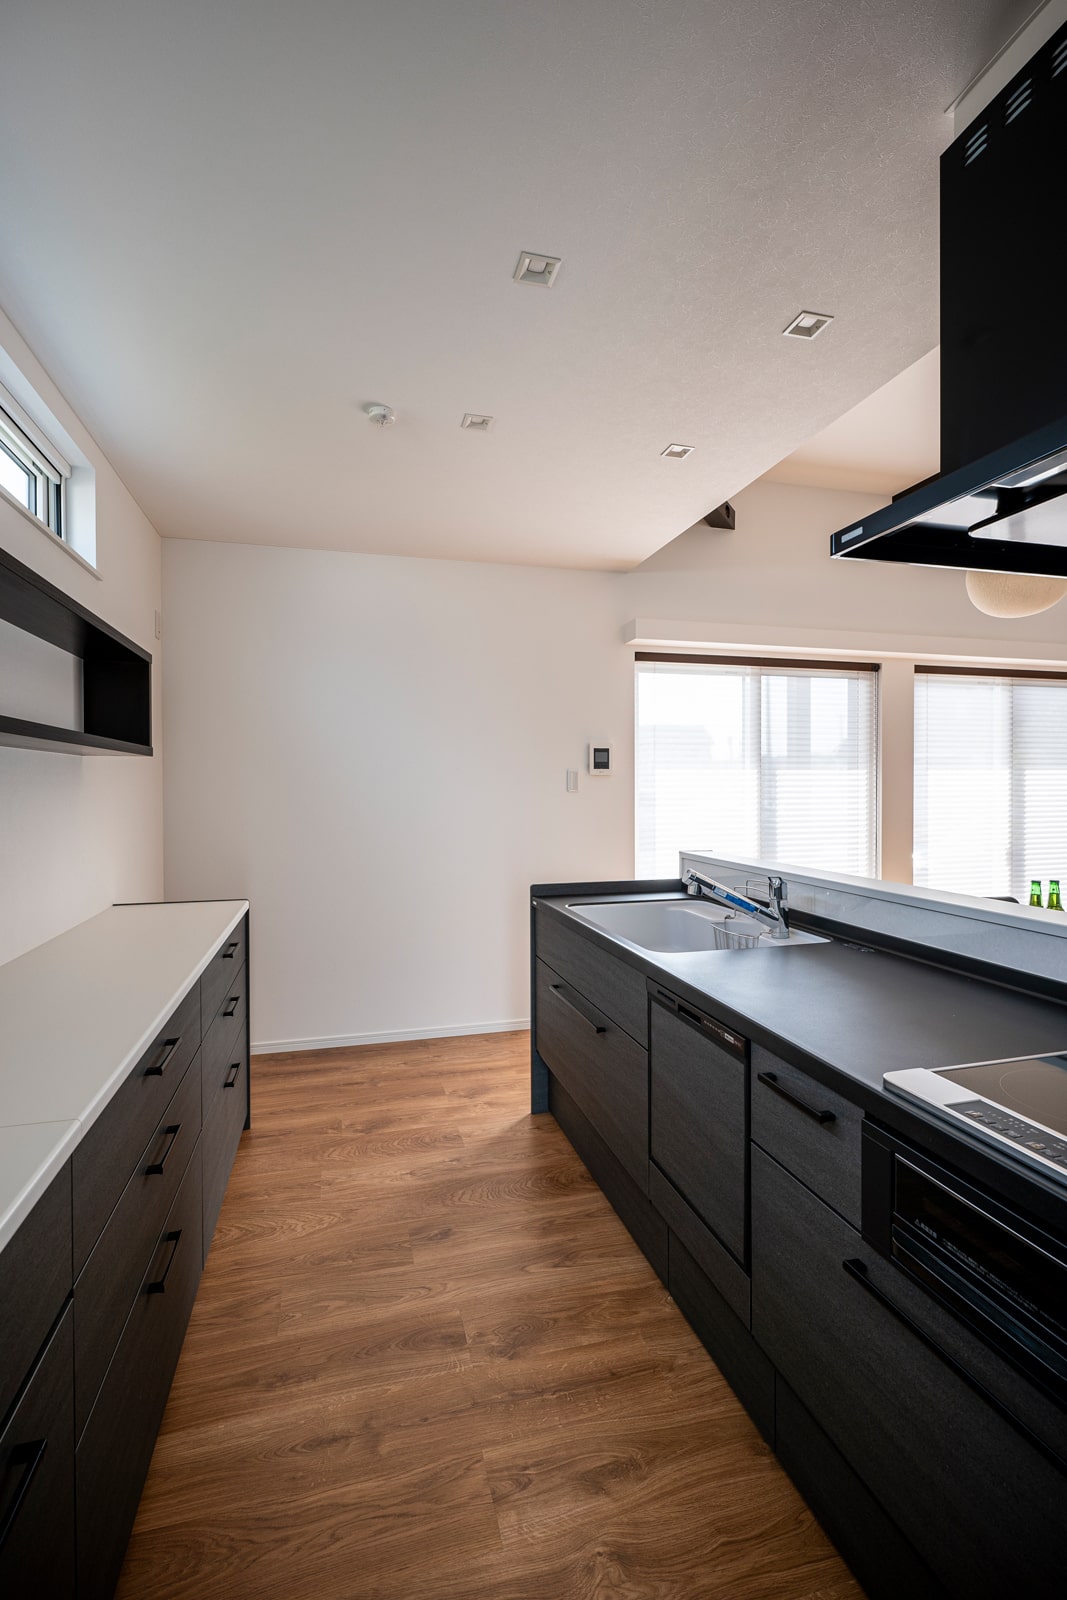 標準仕様のキッチンも一般的なものよりワンランク上。天板にエンボスコートの人造大理石が使用されている